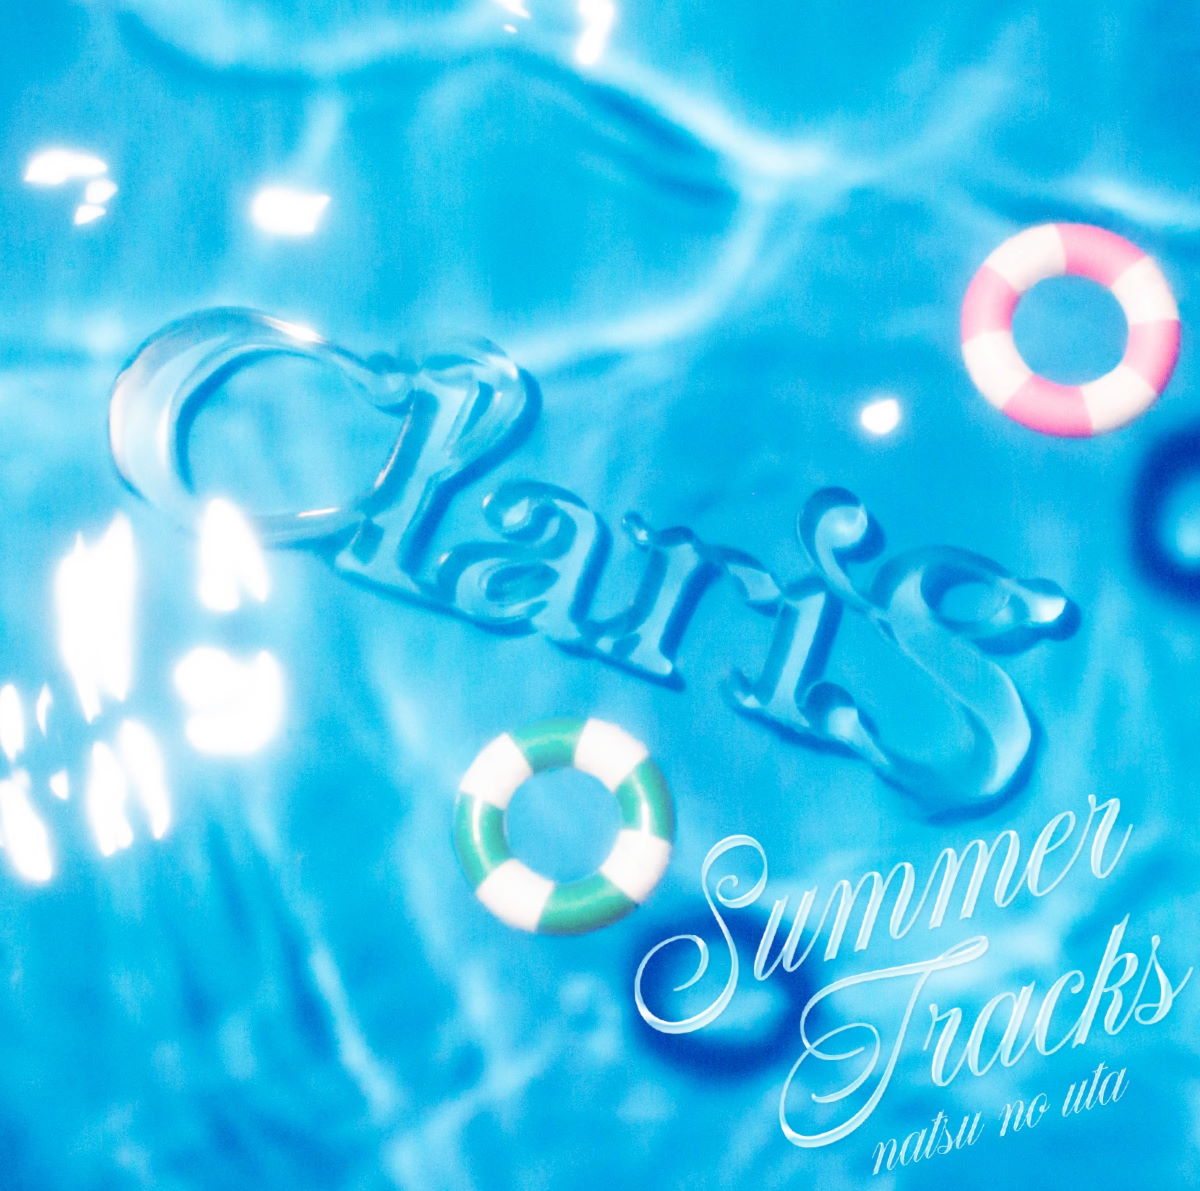 Cover for『ClariS - secret base ~Kimi ga Kureta Mono~』from the release『SUMMER TRACKS -Natsu no Uta-』